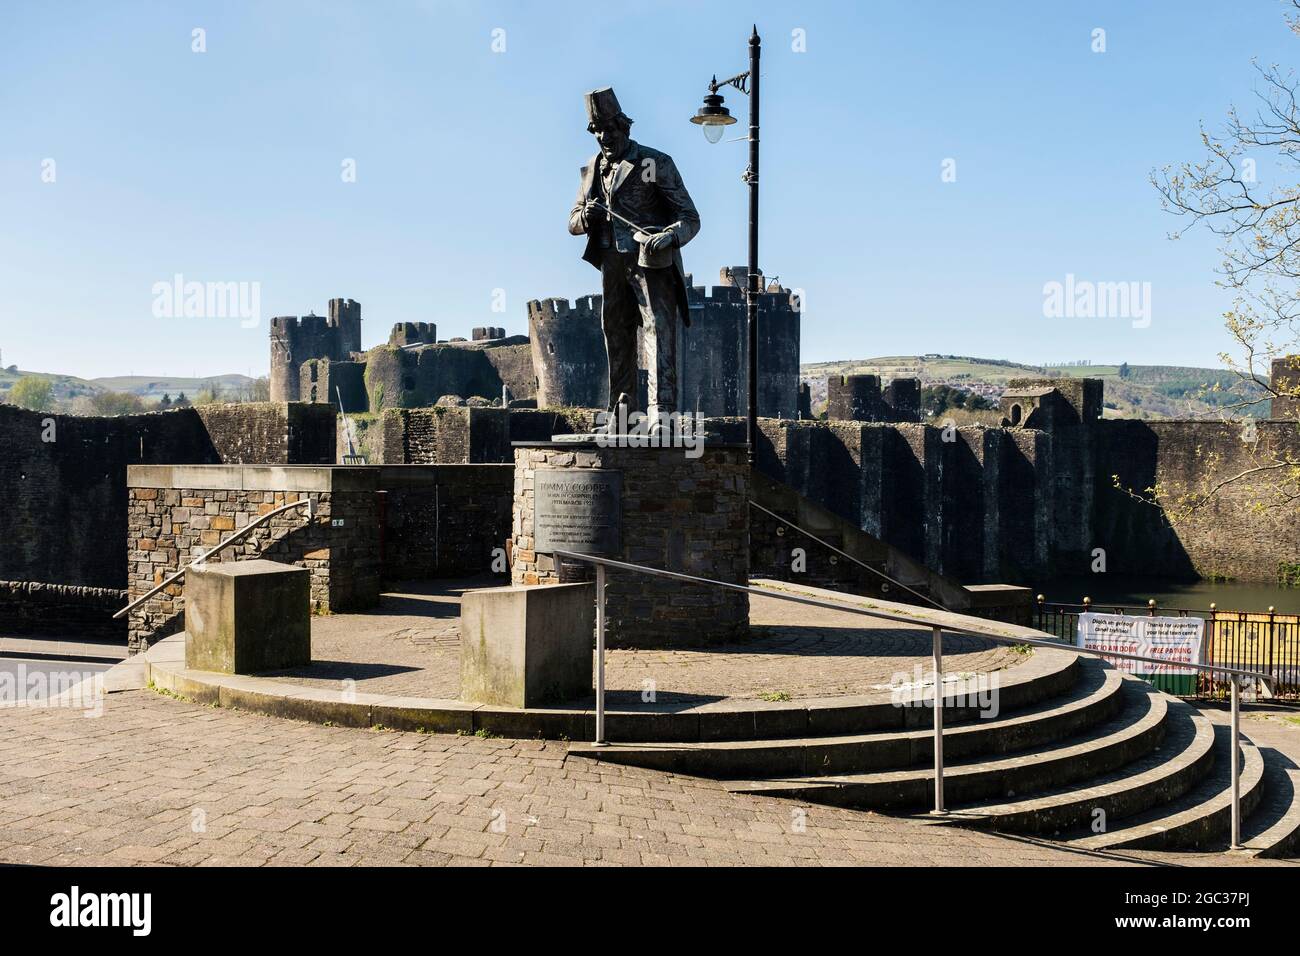 Statua di Tommy Cooper e castello di Caerphilly (Castell Caerffili). Caerphilly, Gwent, Galles meridionale, Regno Unito, Gran Bretagna Foto Stock